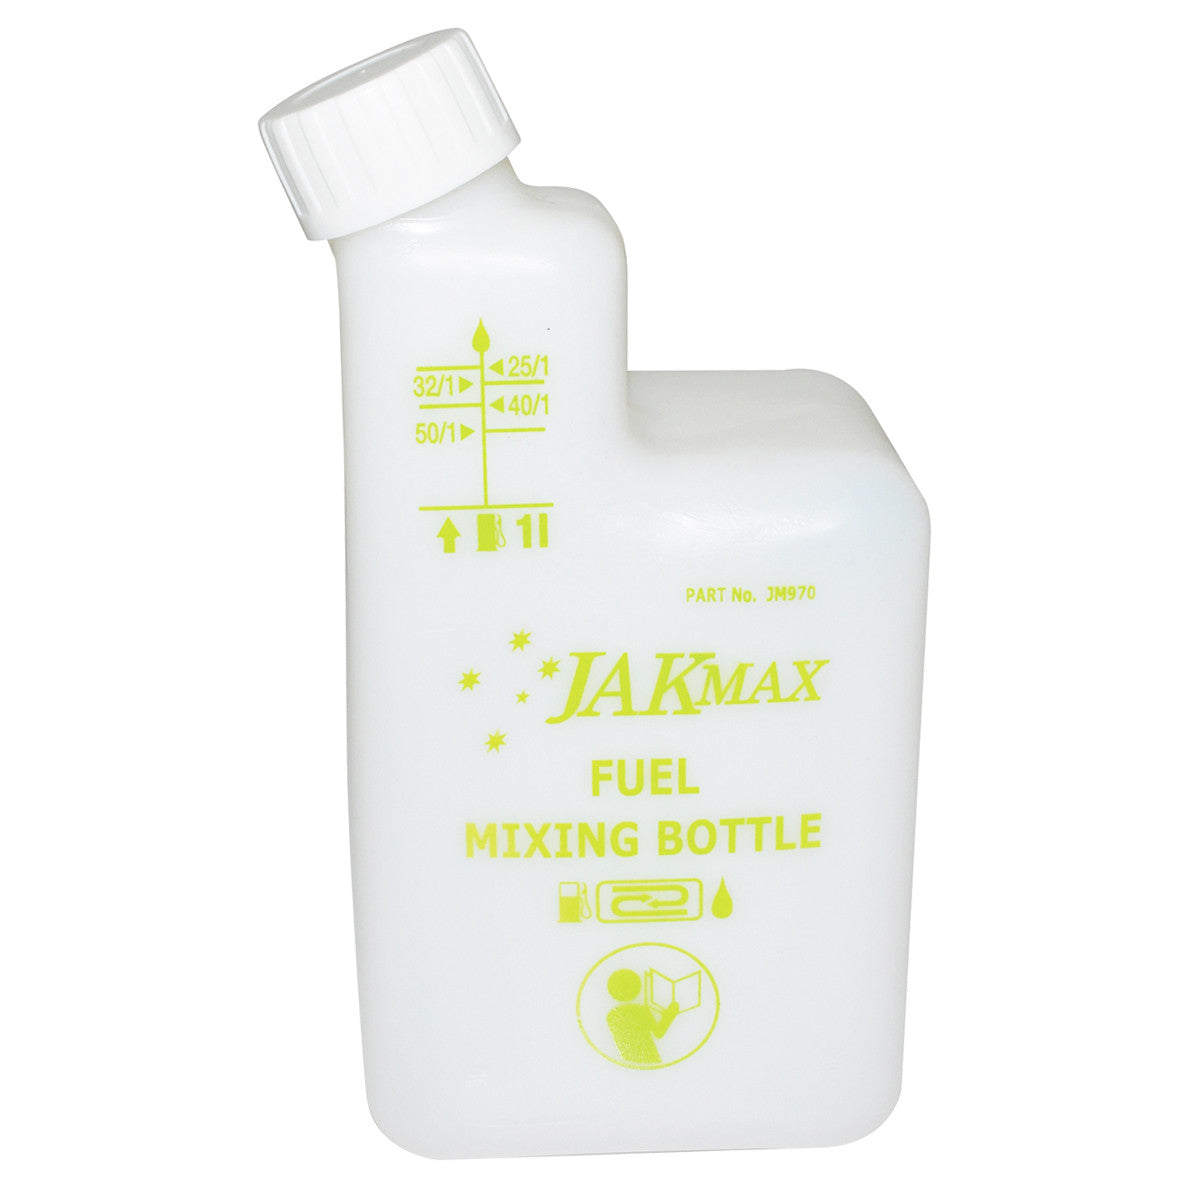 JakMax 1-Litre Fuel Pre-Mixing Bottle